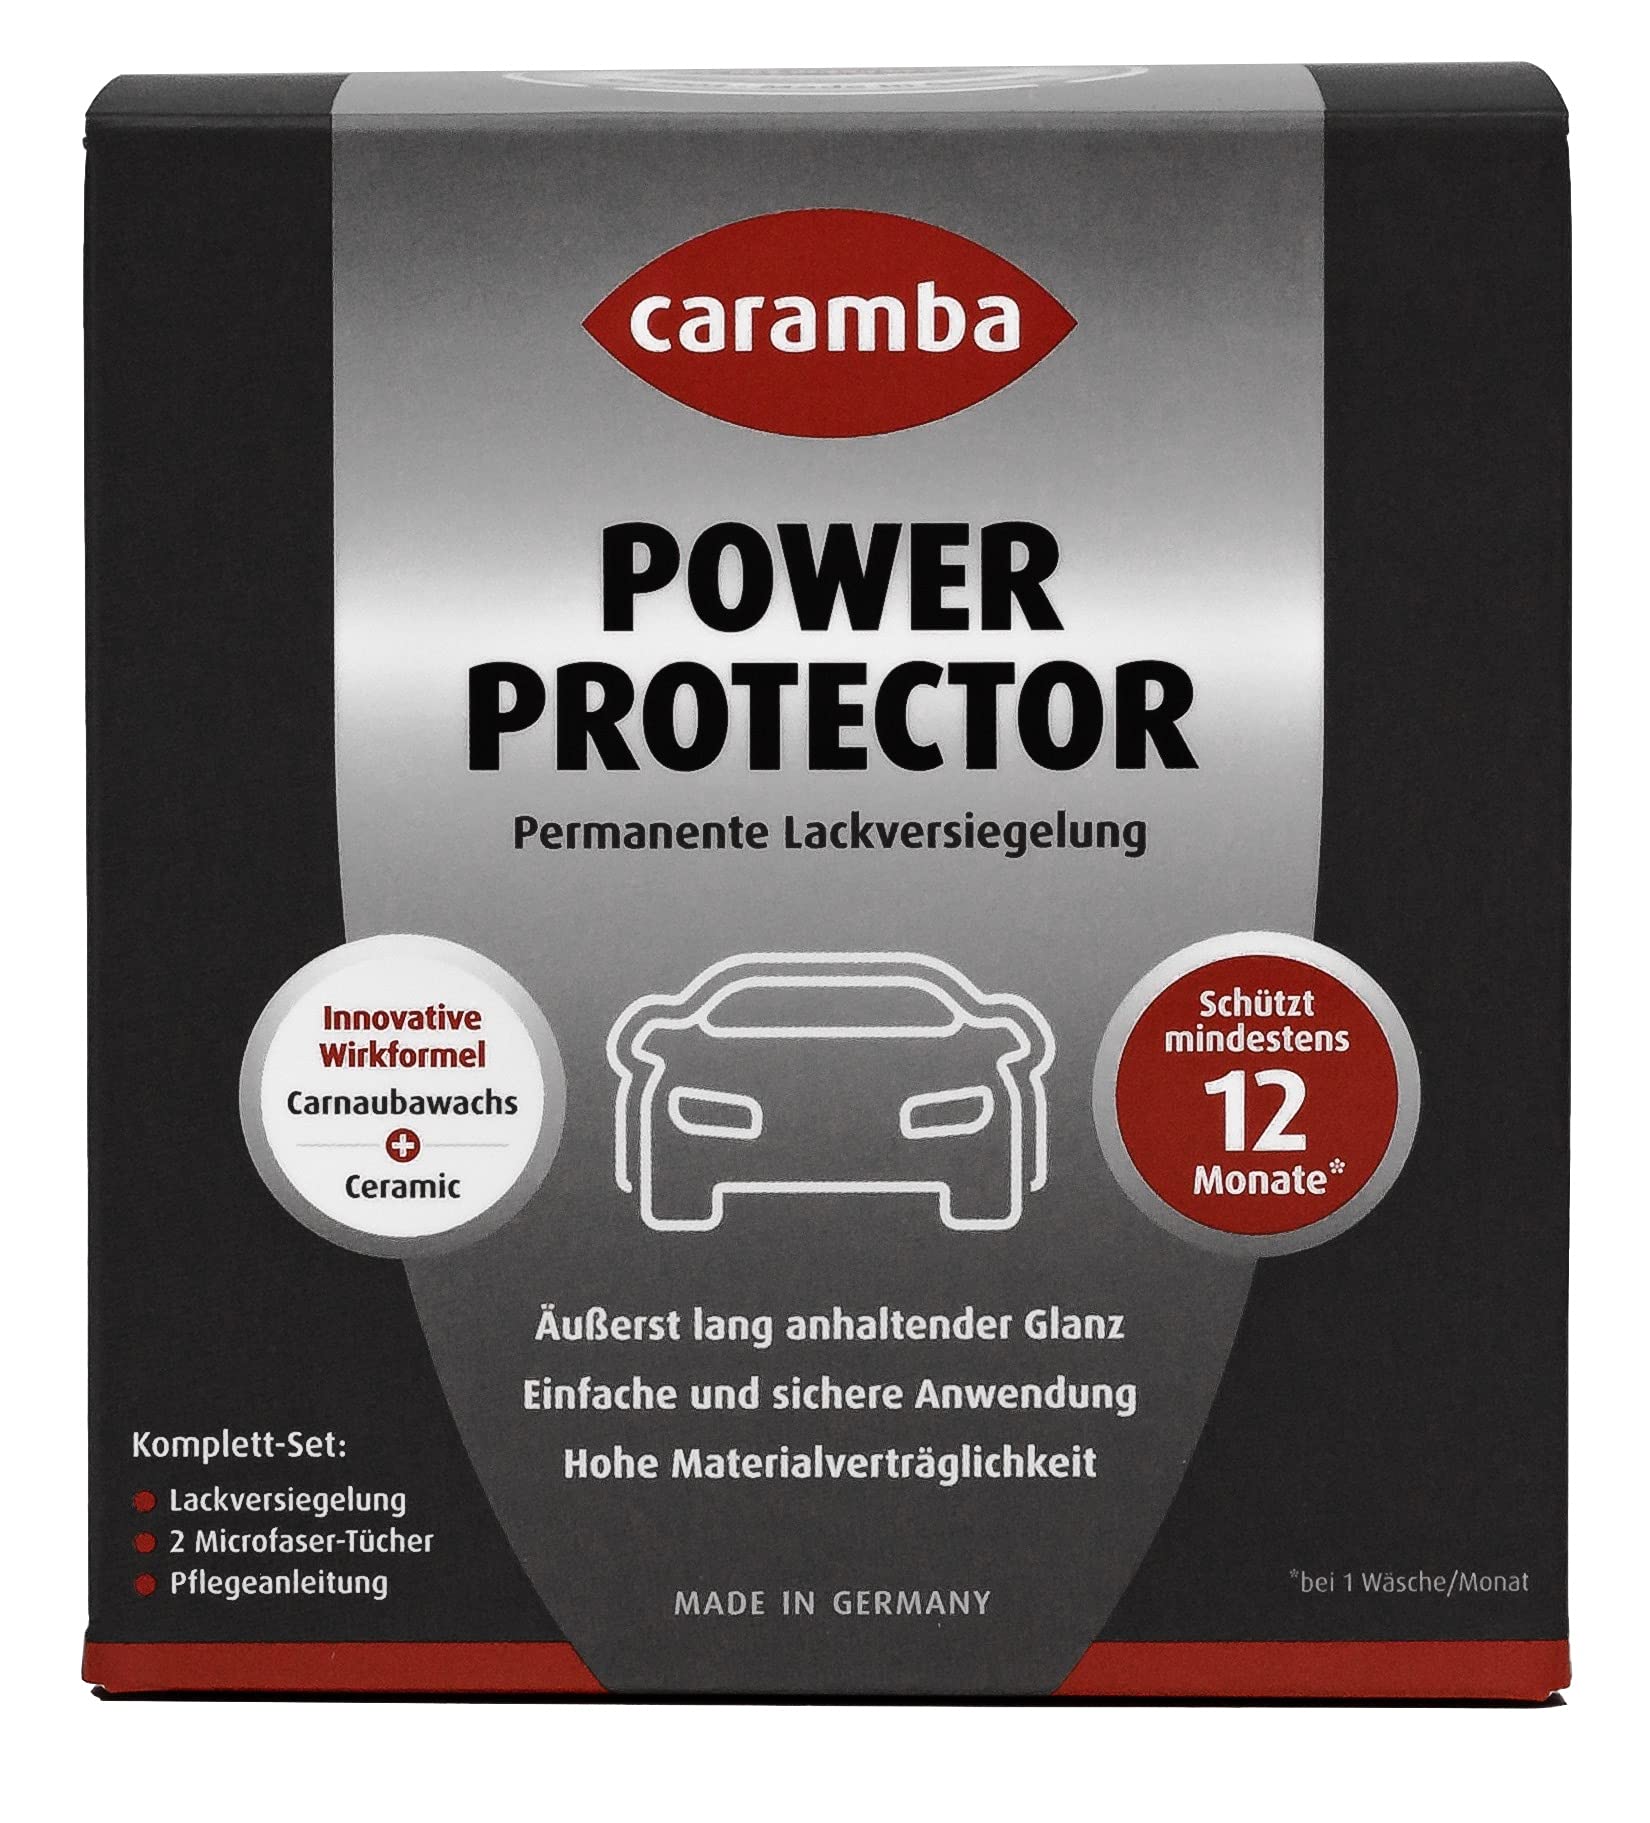 Caramba Power Protector (75 ml Set inkl. 2 Microfasertücher) – Autopflege Set zur Autolack-Versiegelung, Glanz- und Farbauffrischung – Keramik Versiegelung mit Carnaubawachs für dauerhaften Schutz von Caramba